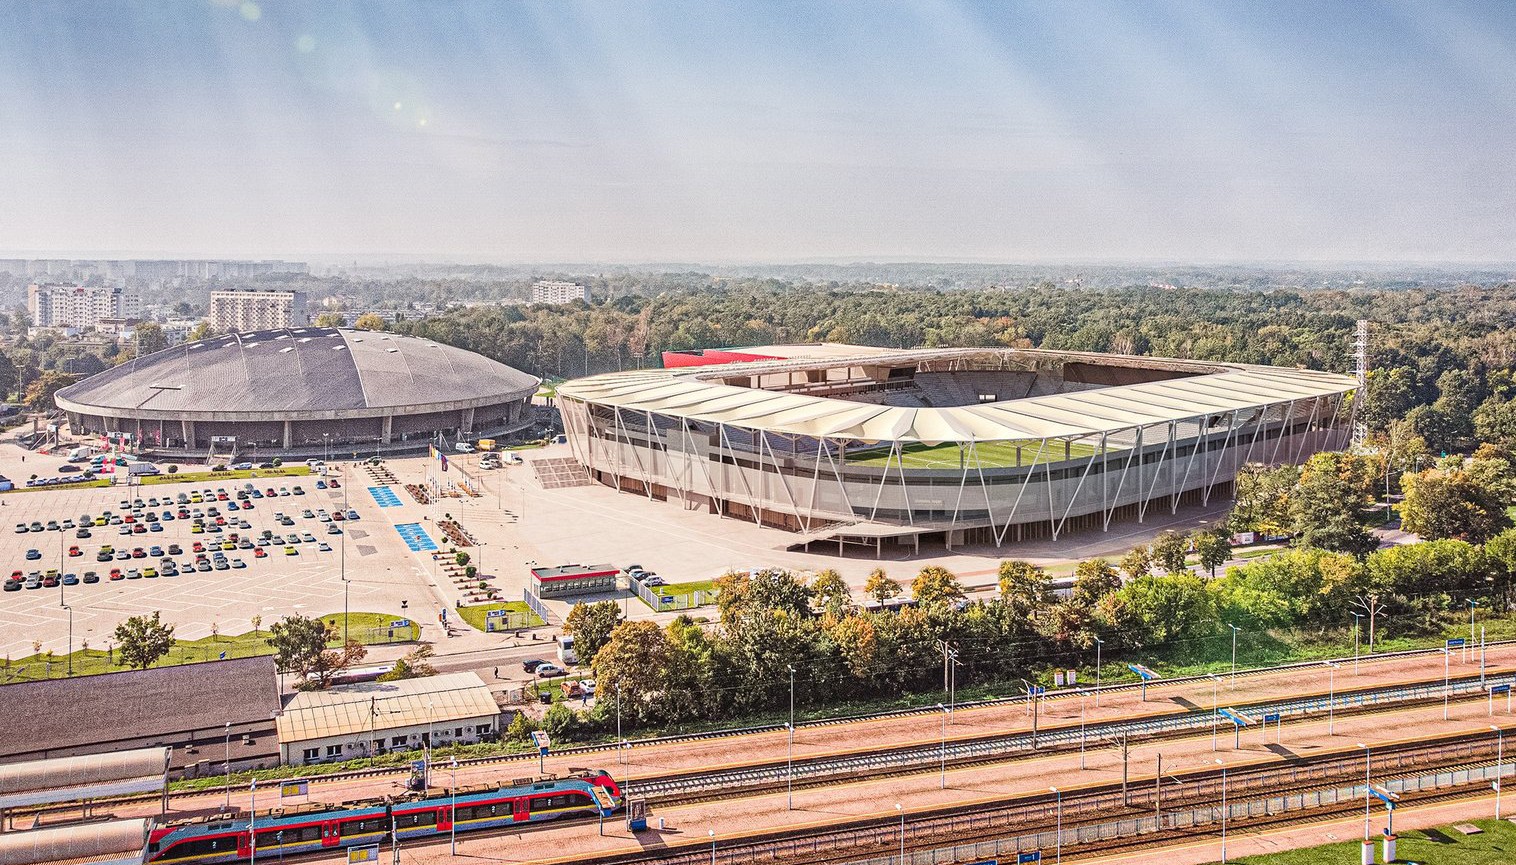 Stadion Miejski ŁKS